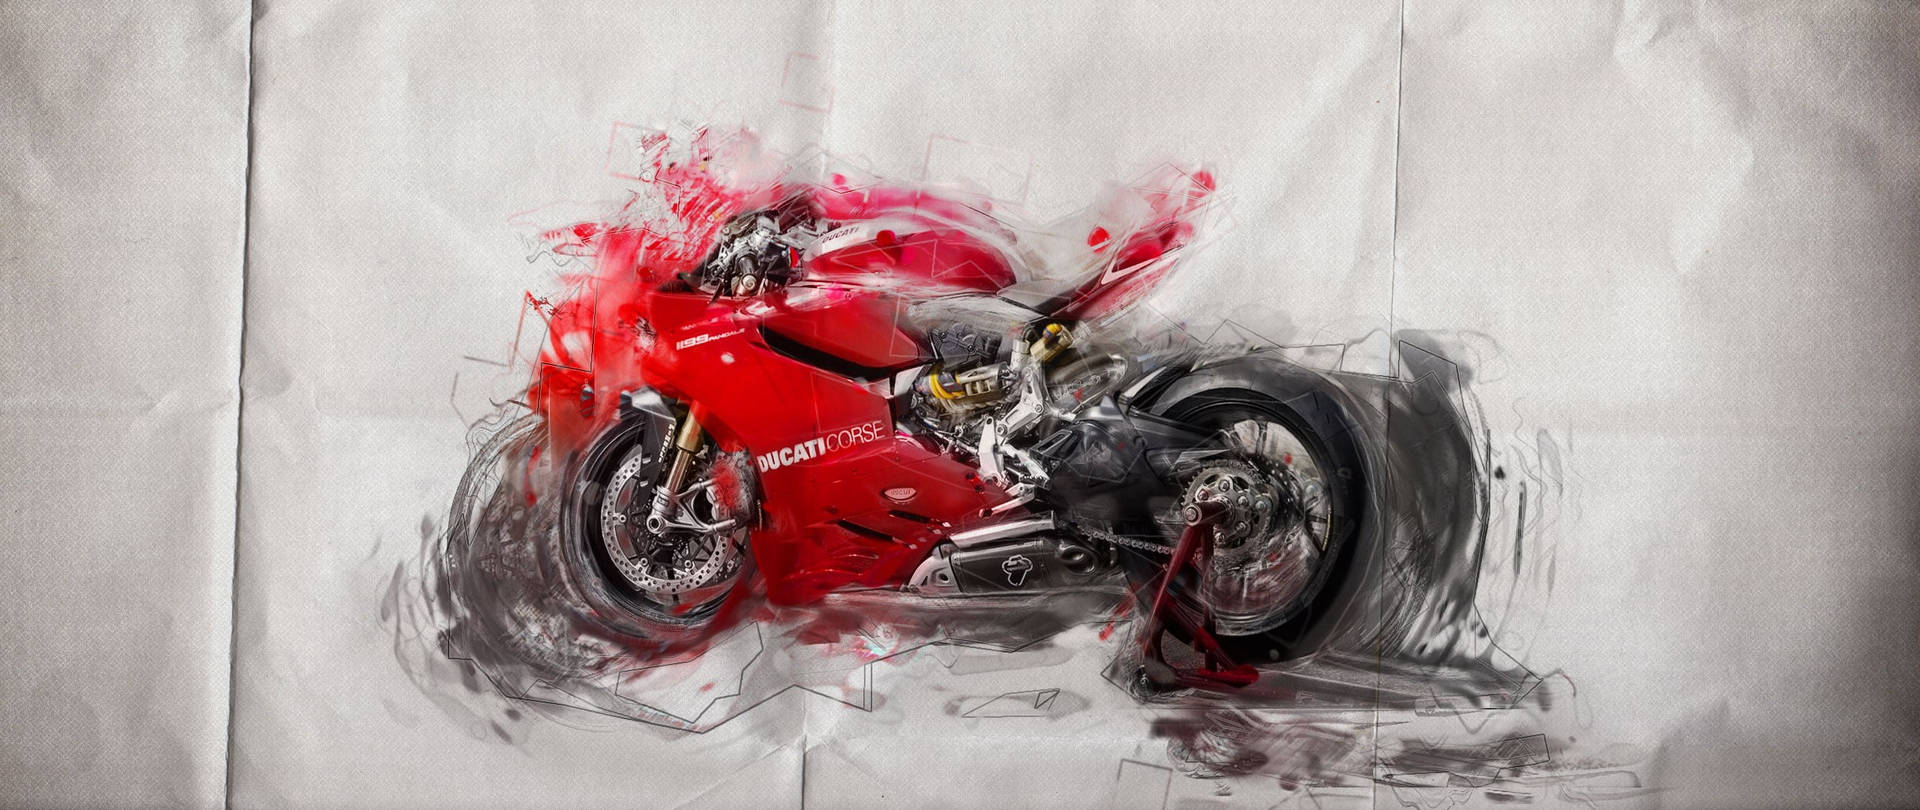 Ducati Corse Red Bike Illustration Wallpaper